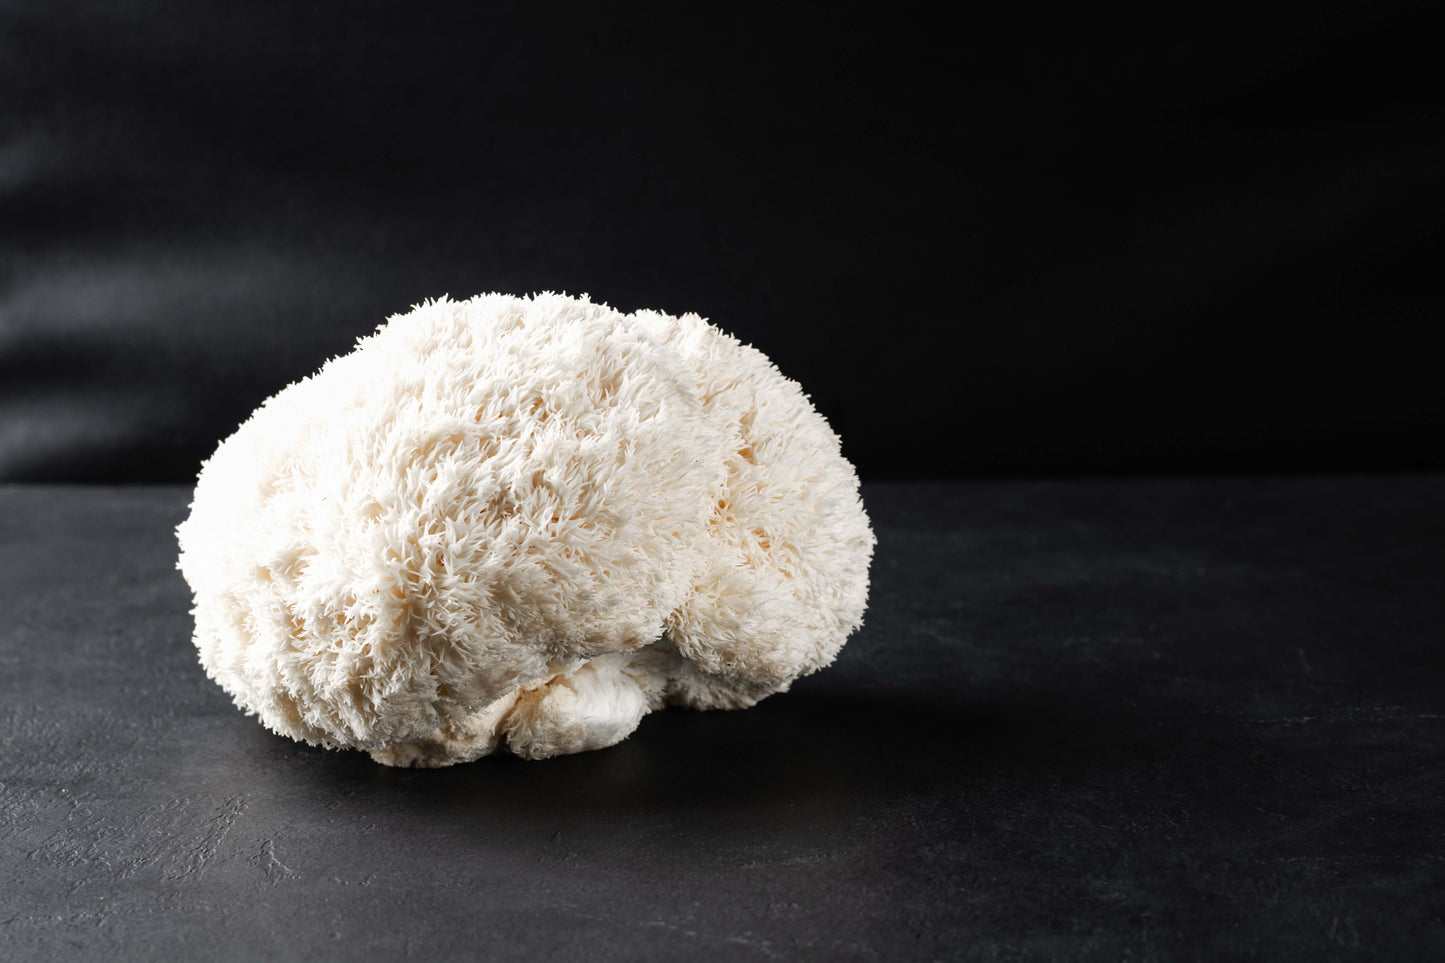 Lion's Mane Grow-at-Home Mushroom Kit